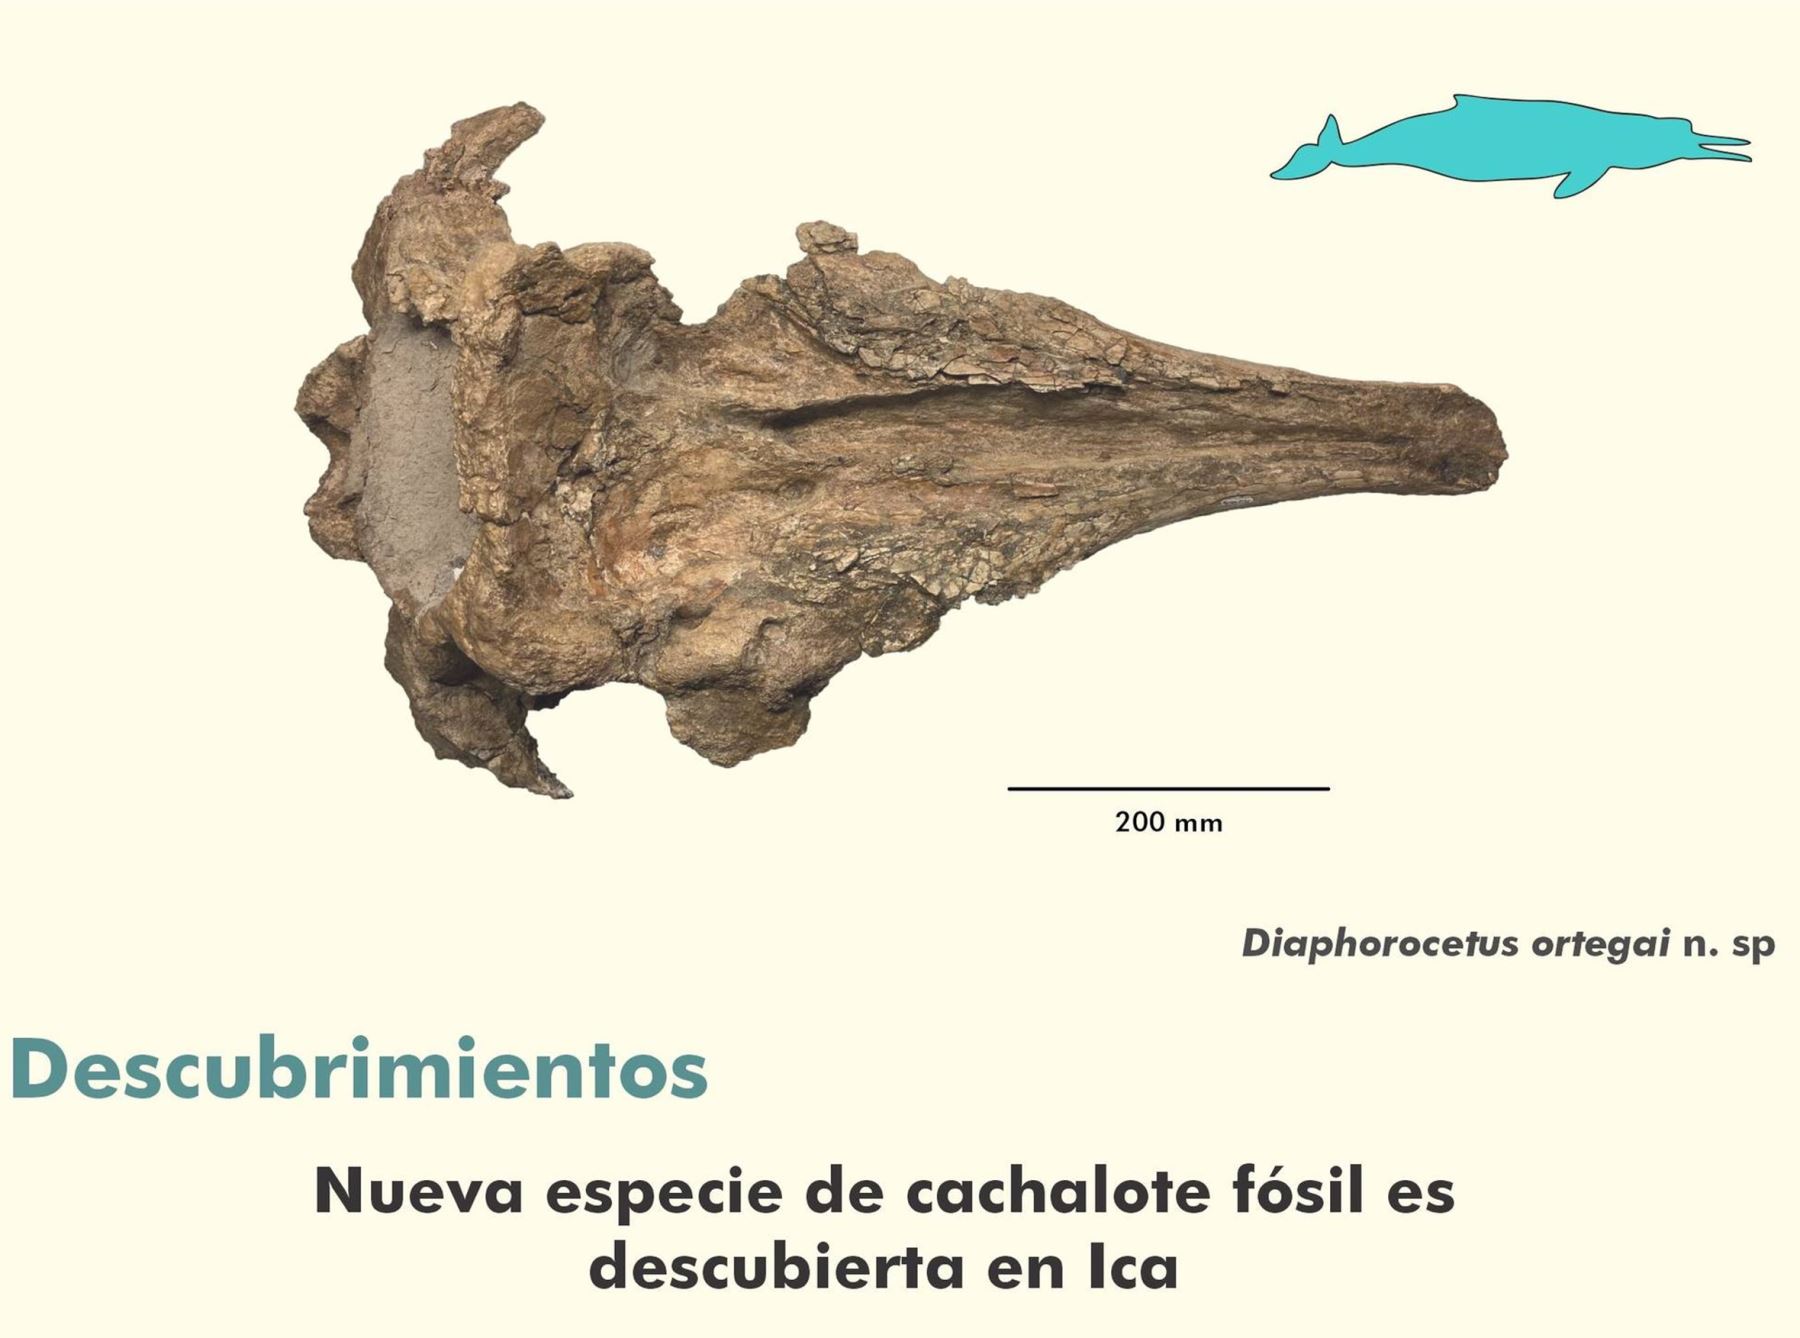 Equipo de investigadores descubrió una nueva especie de cachalote fósil en el desierto de Ocucaje, en Ica.